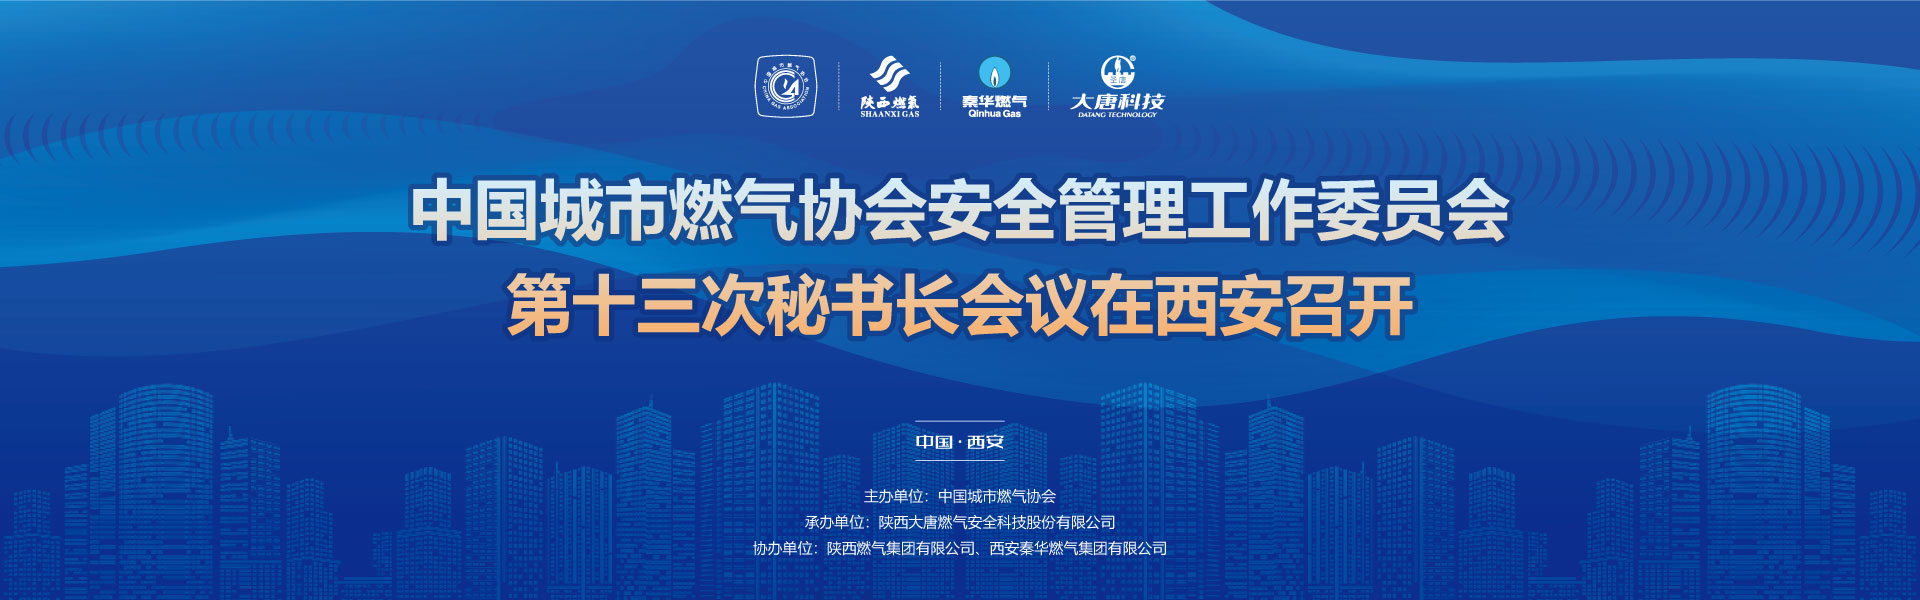 中國城市燃氣協會安全管理工作委員會第十三次秘書長會議在西安召開